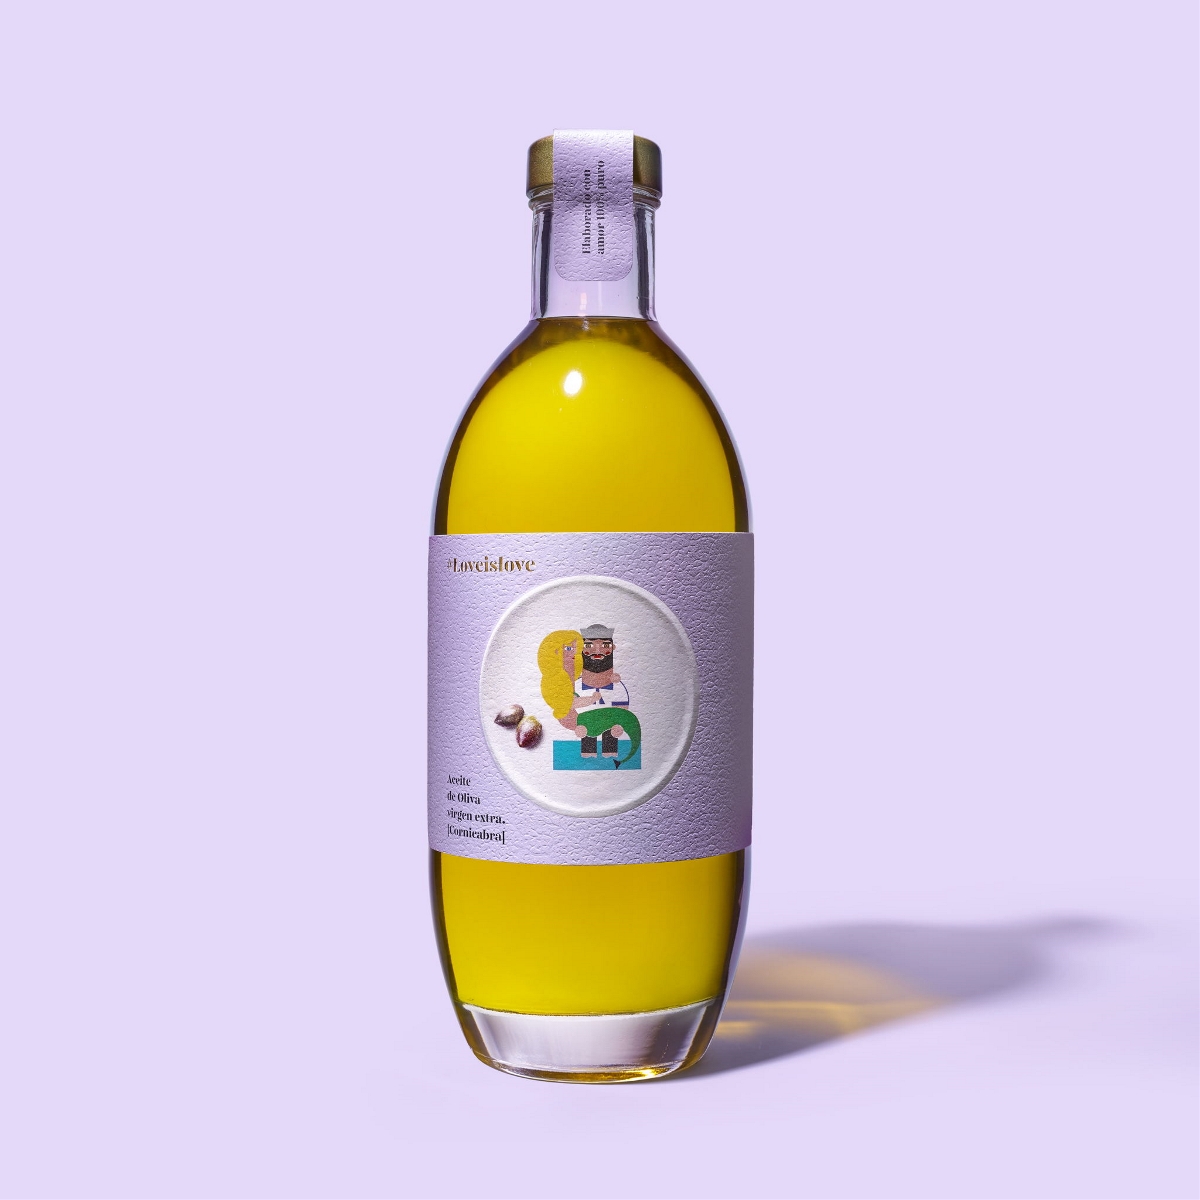 橄榄油标签设计